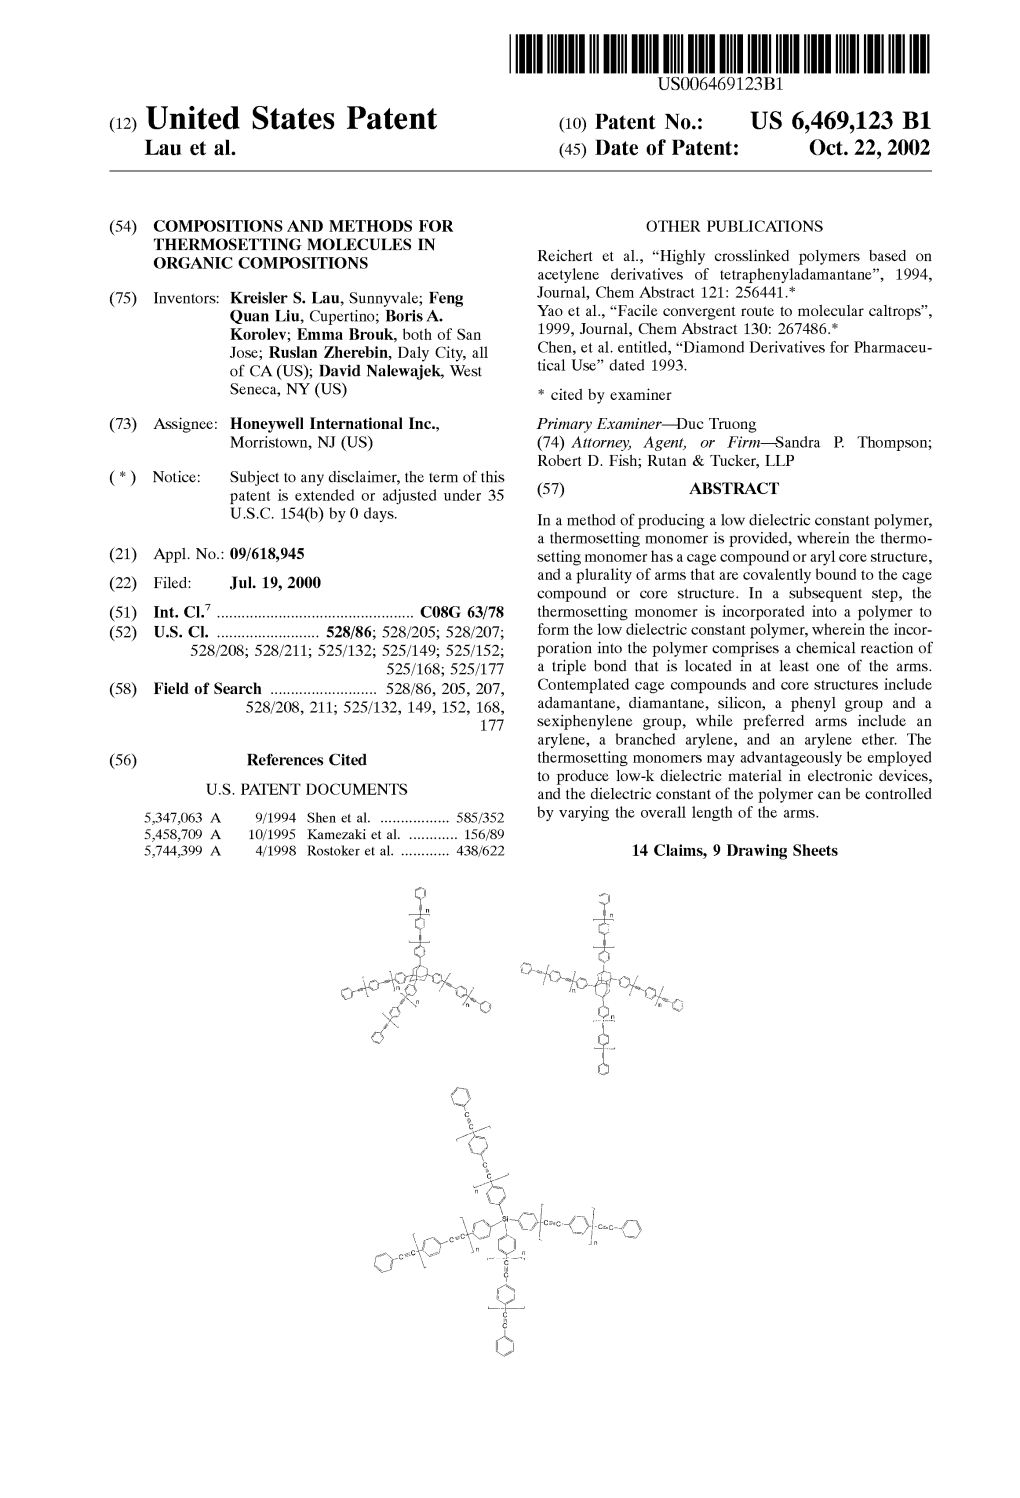 (12) United States Patent (10) Patent No.: US 6,469,123 B1 Lau Et Al